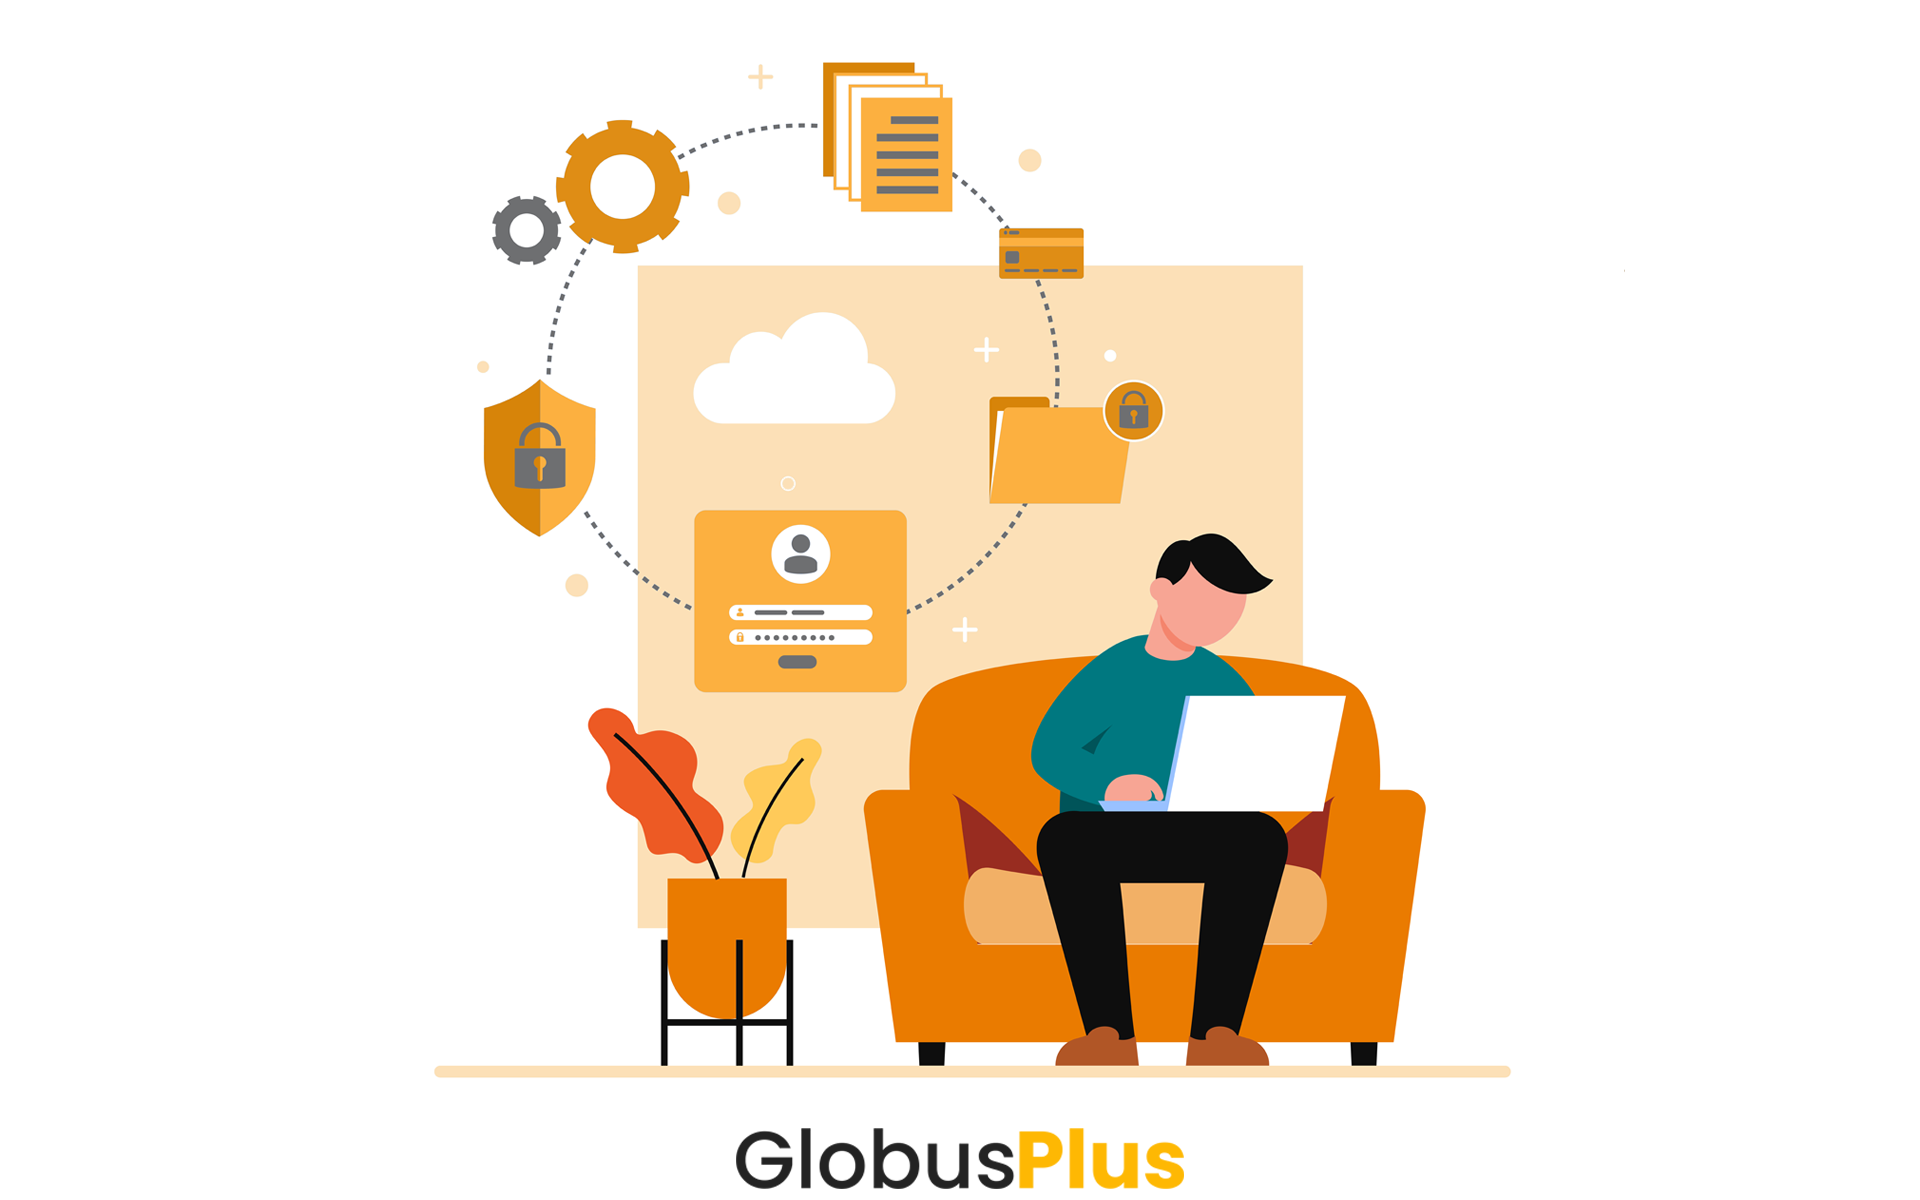 Globus Plus